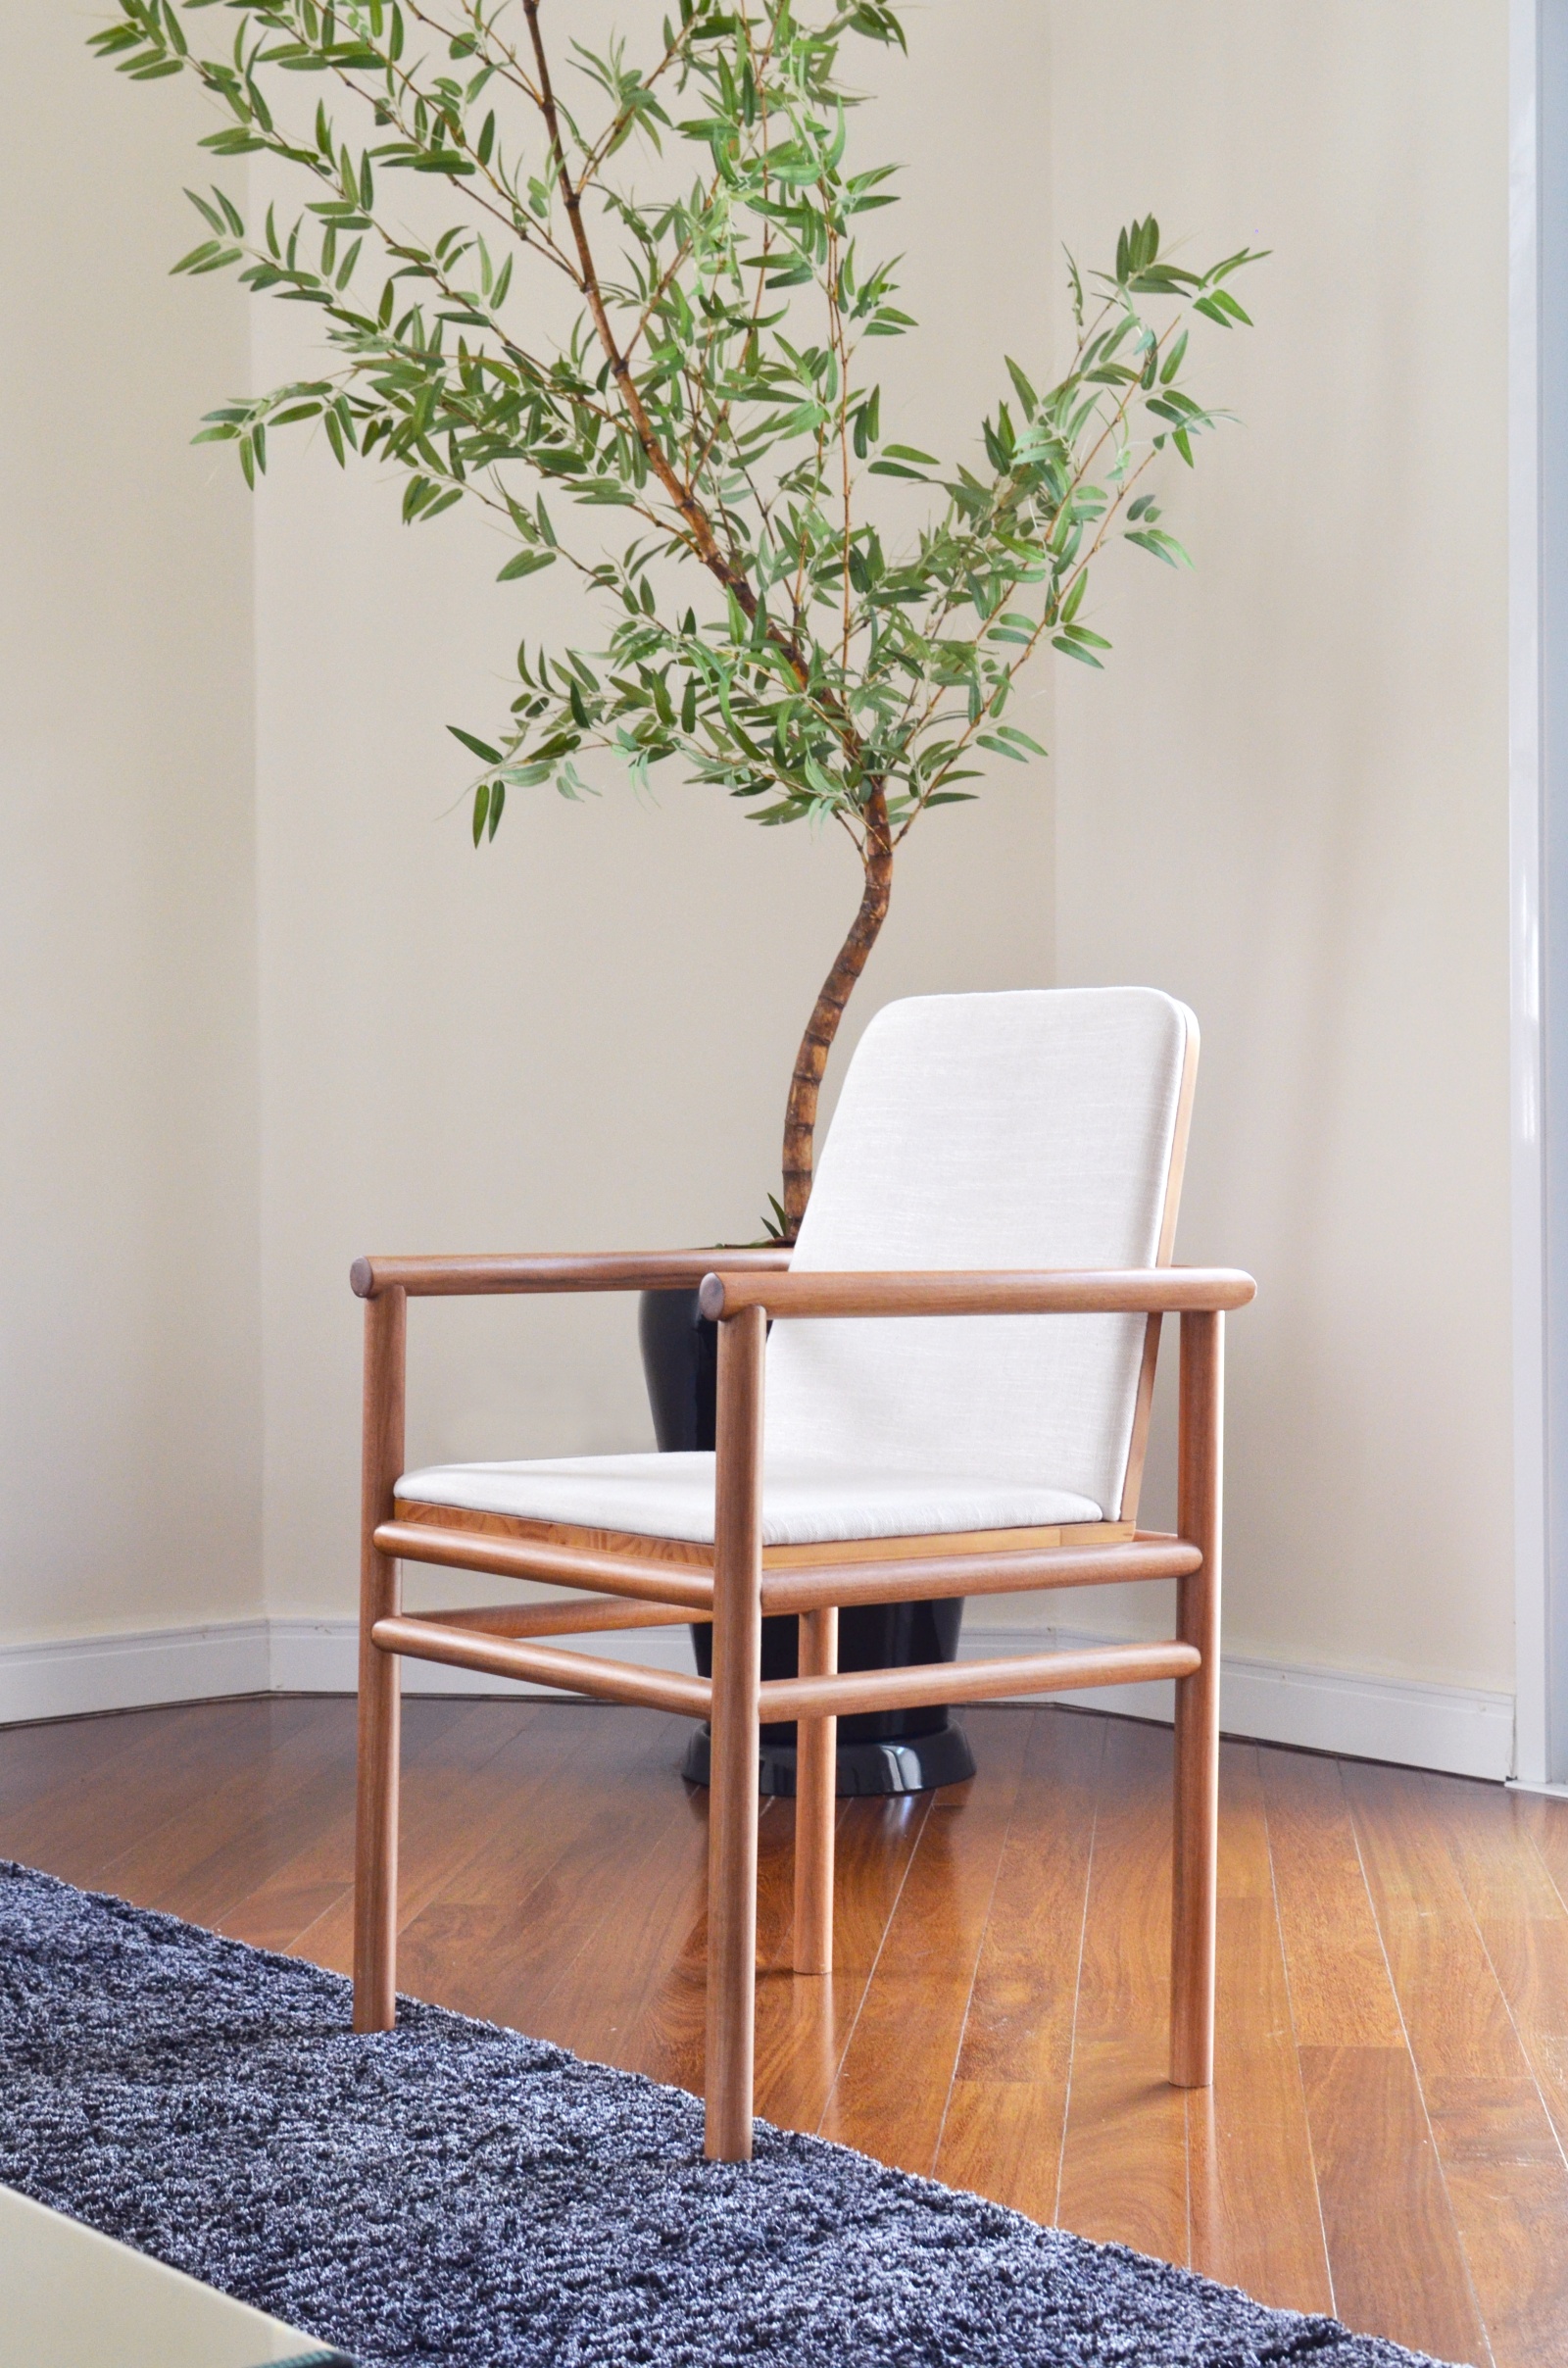 Cadeira bali, madeira com estofado branco, ambiente com piso de madeira e planta.